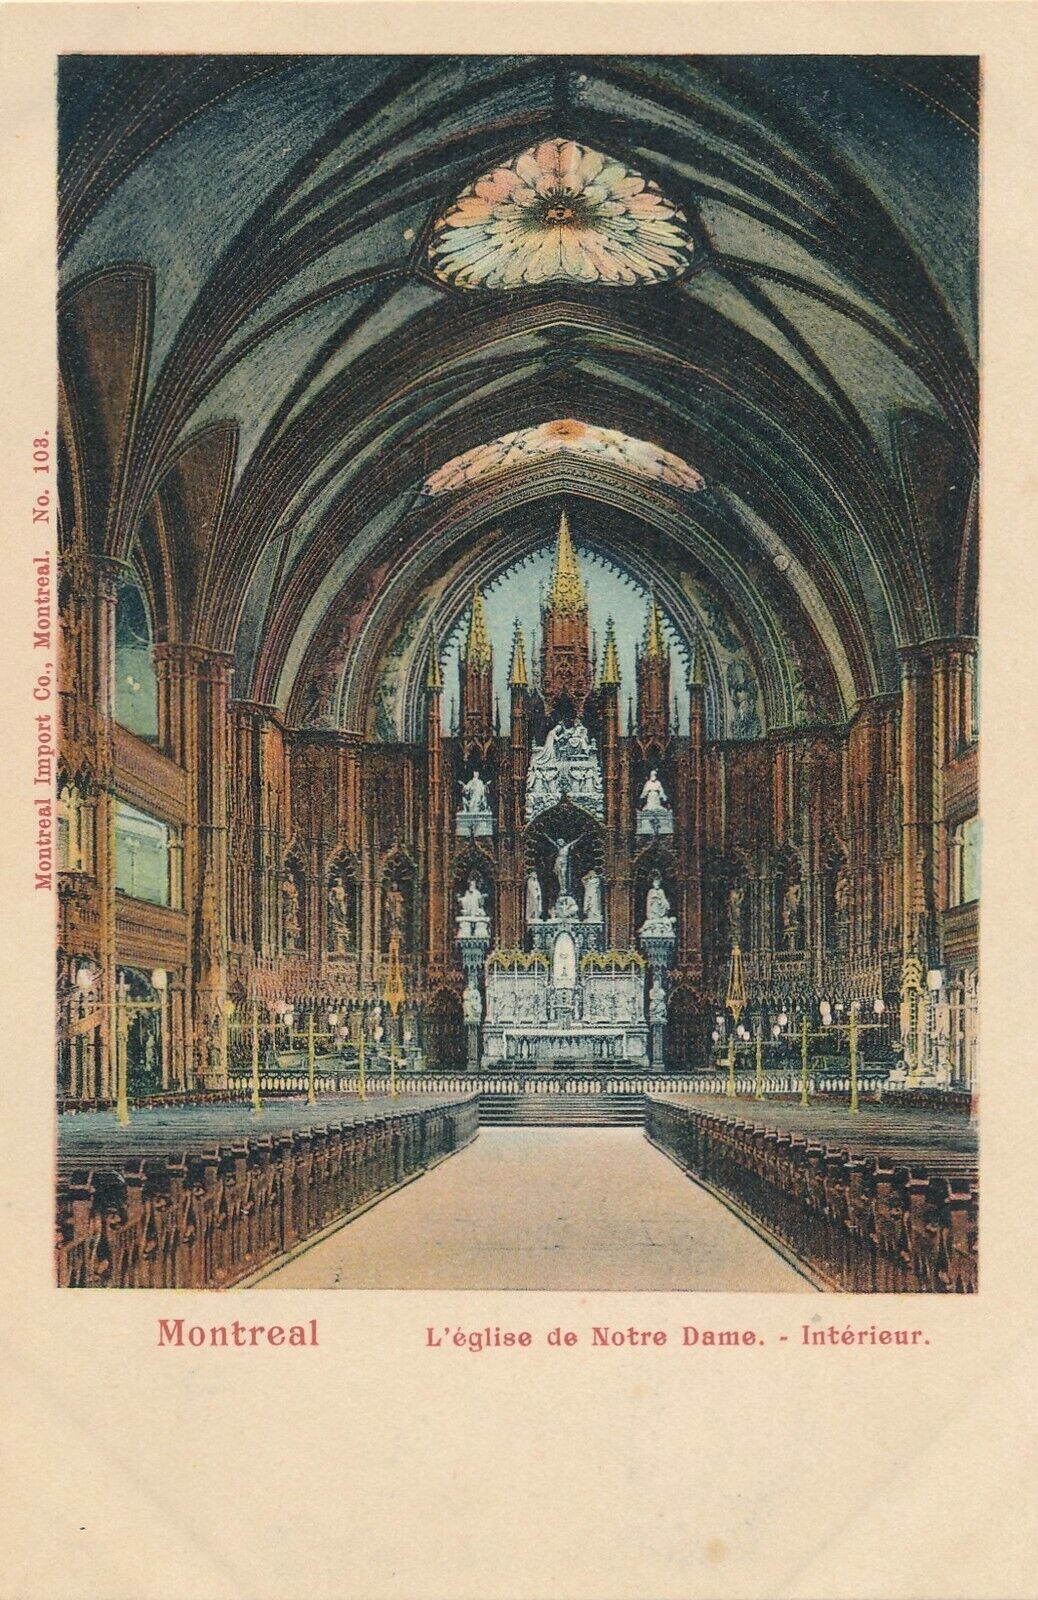 MONTREAL QC – L’Eglise de Notre Dame Interieur – udb (pre 1908)